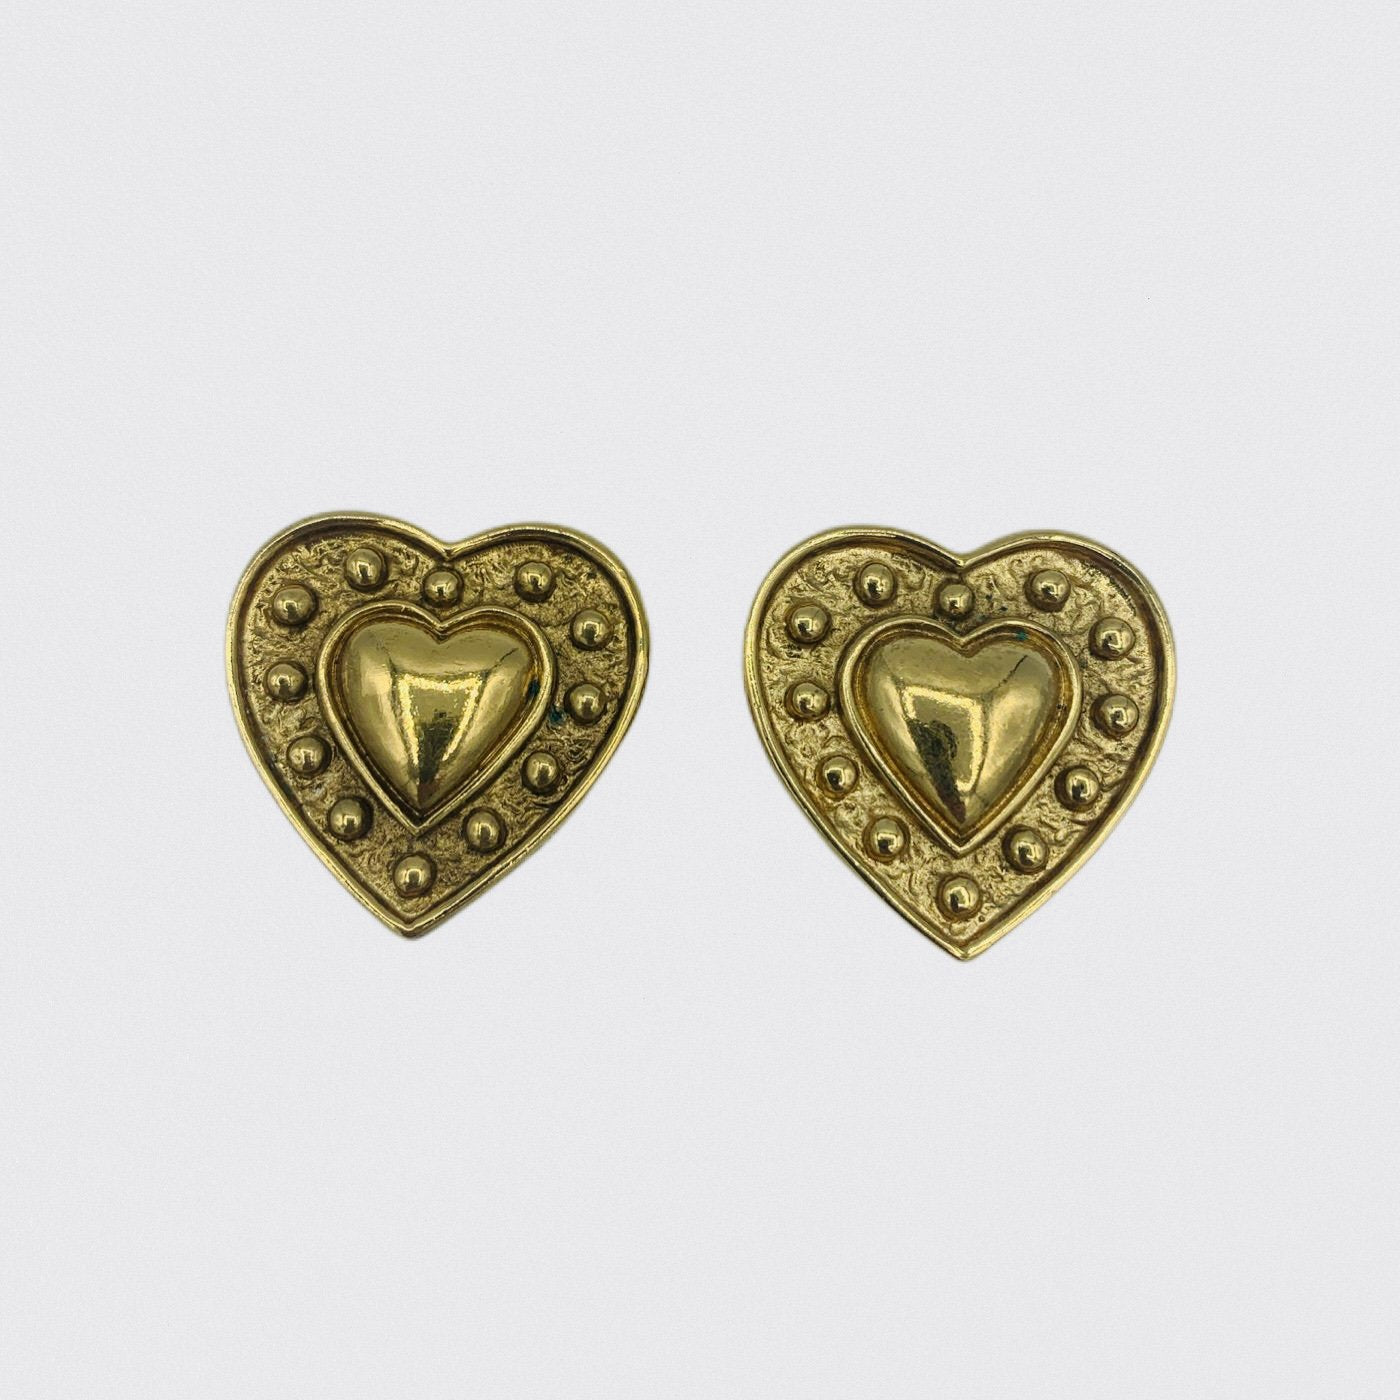 Boucles d’oreilles earrings vintage second main second hand yves saint laurent YSL doré gold coeur heart love amour